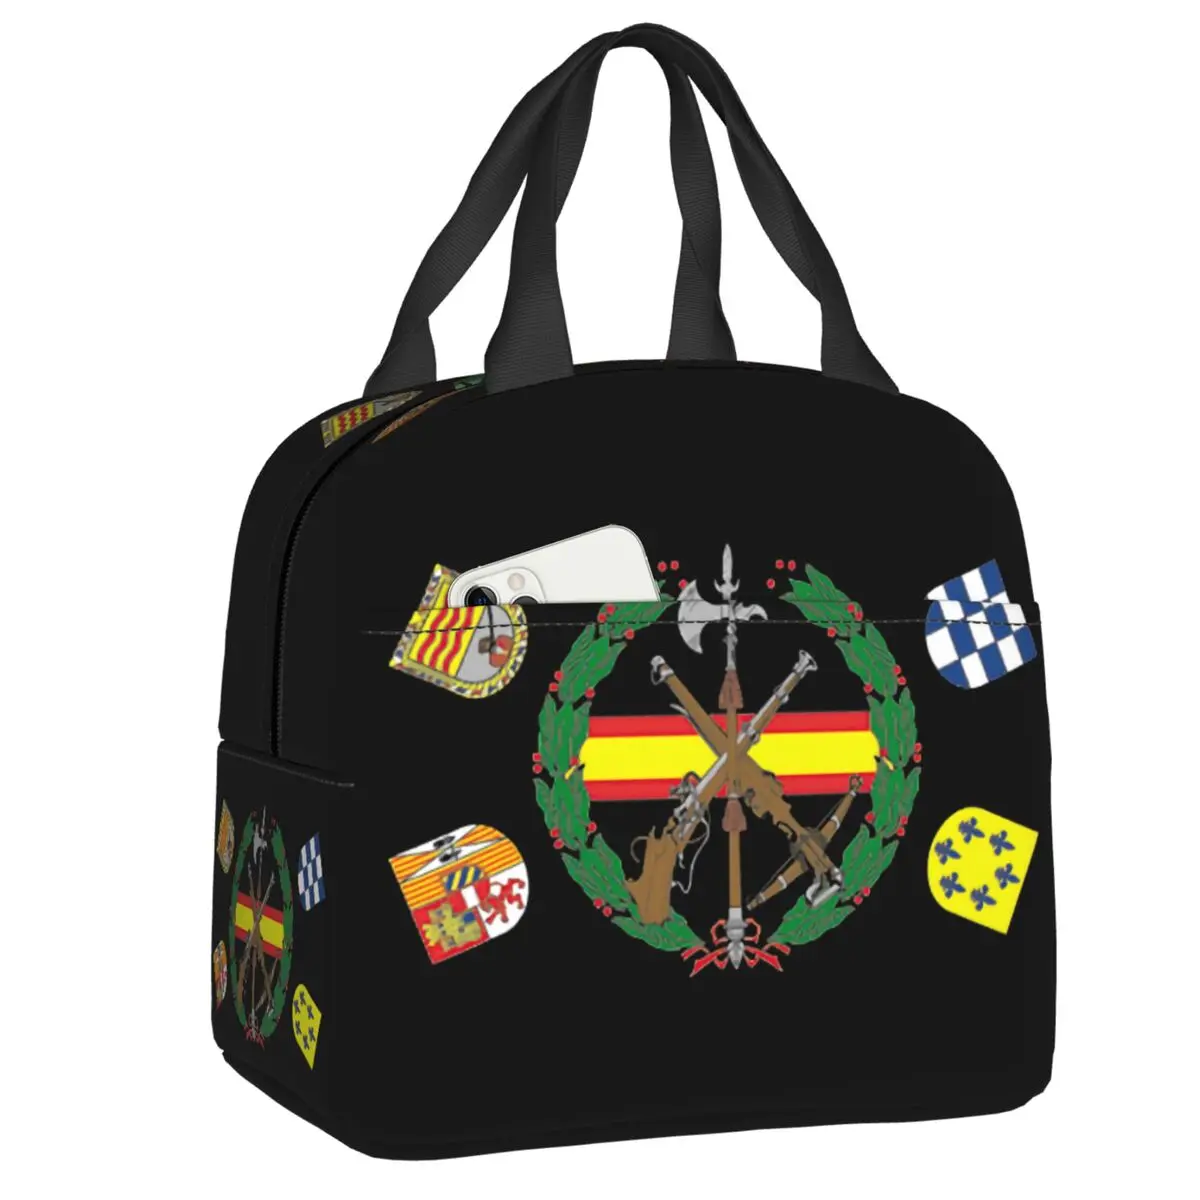 

Изолированная сумка-тоут для ланча с испанским легионом для женщин, герб Испании, переносной термоконтейнер для еды, школьный дорожный Ланч-бокс для работы